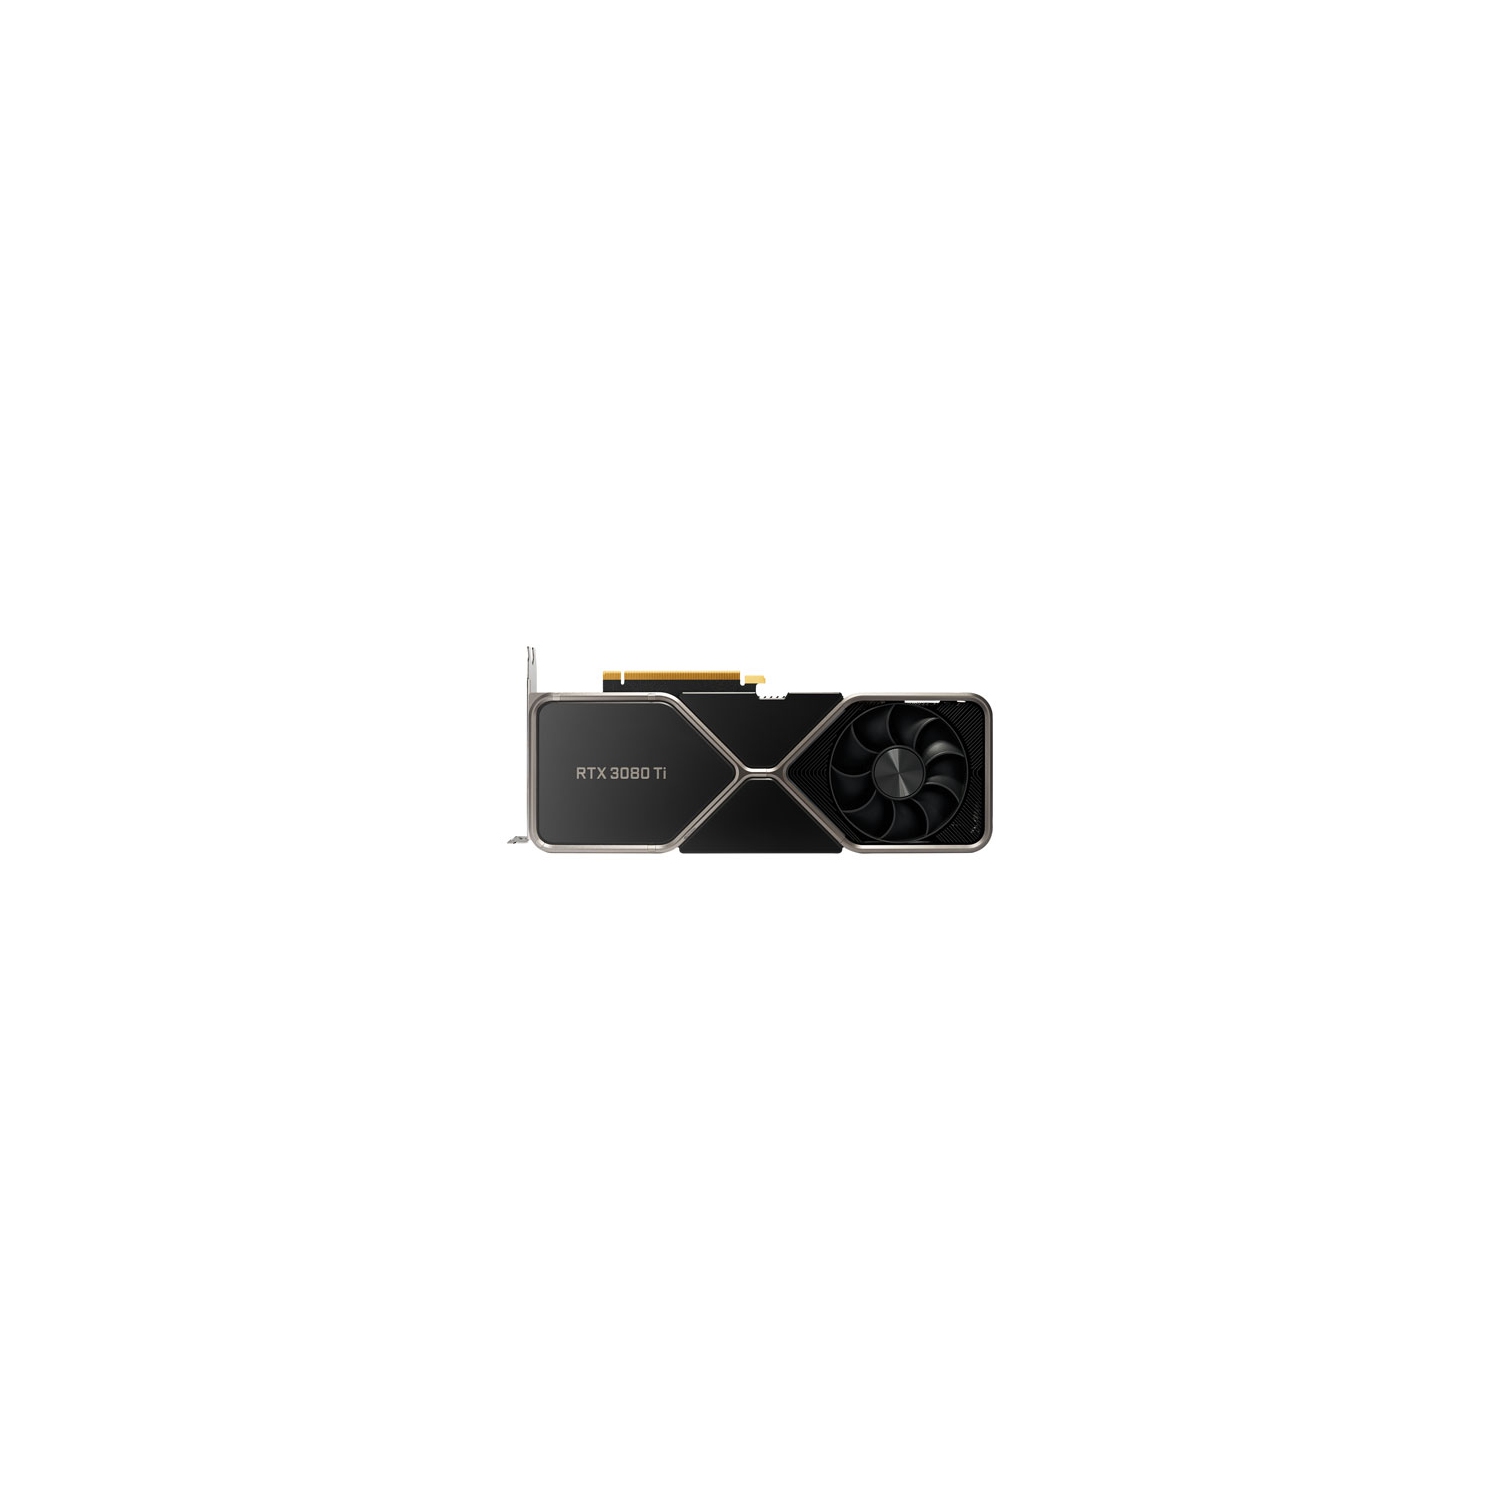 Open Box - NVIDIA GeForce RTX 3080 Ti 12GB GDDR6X Video Card